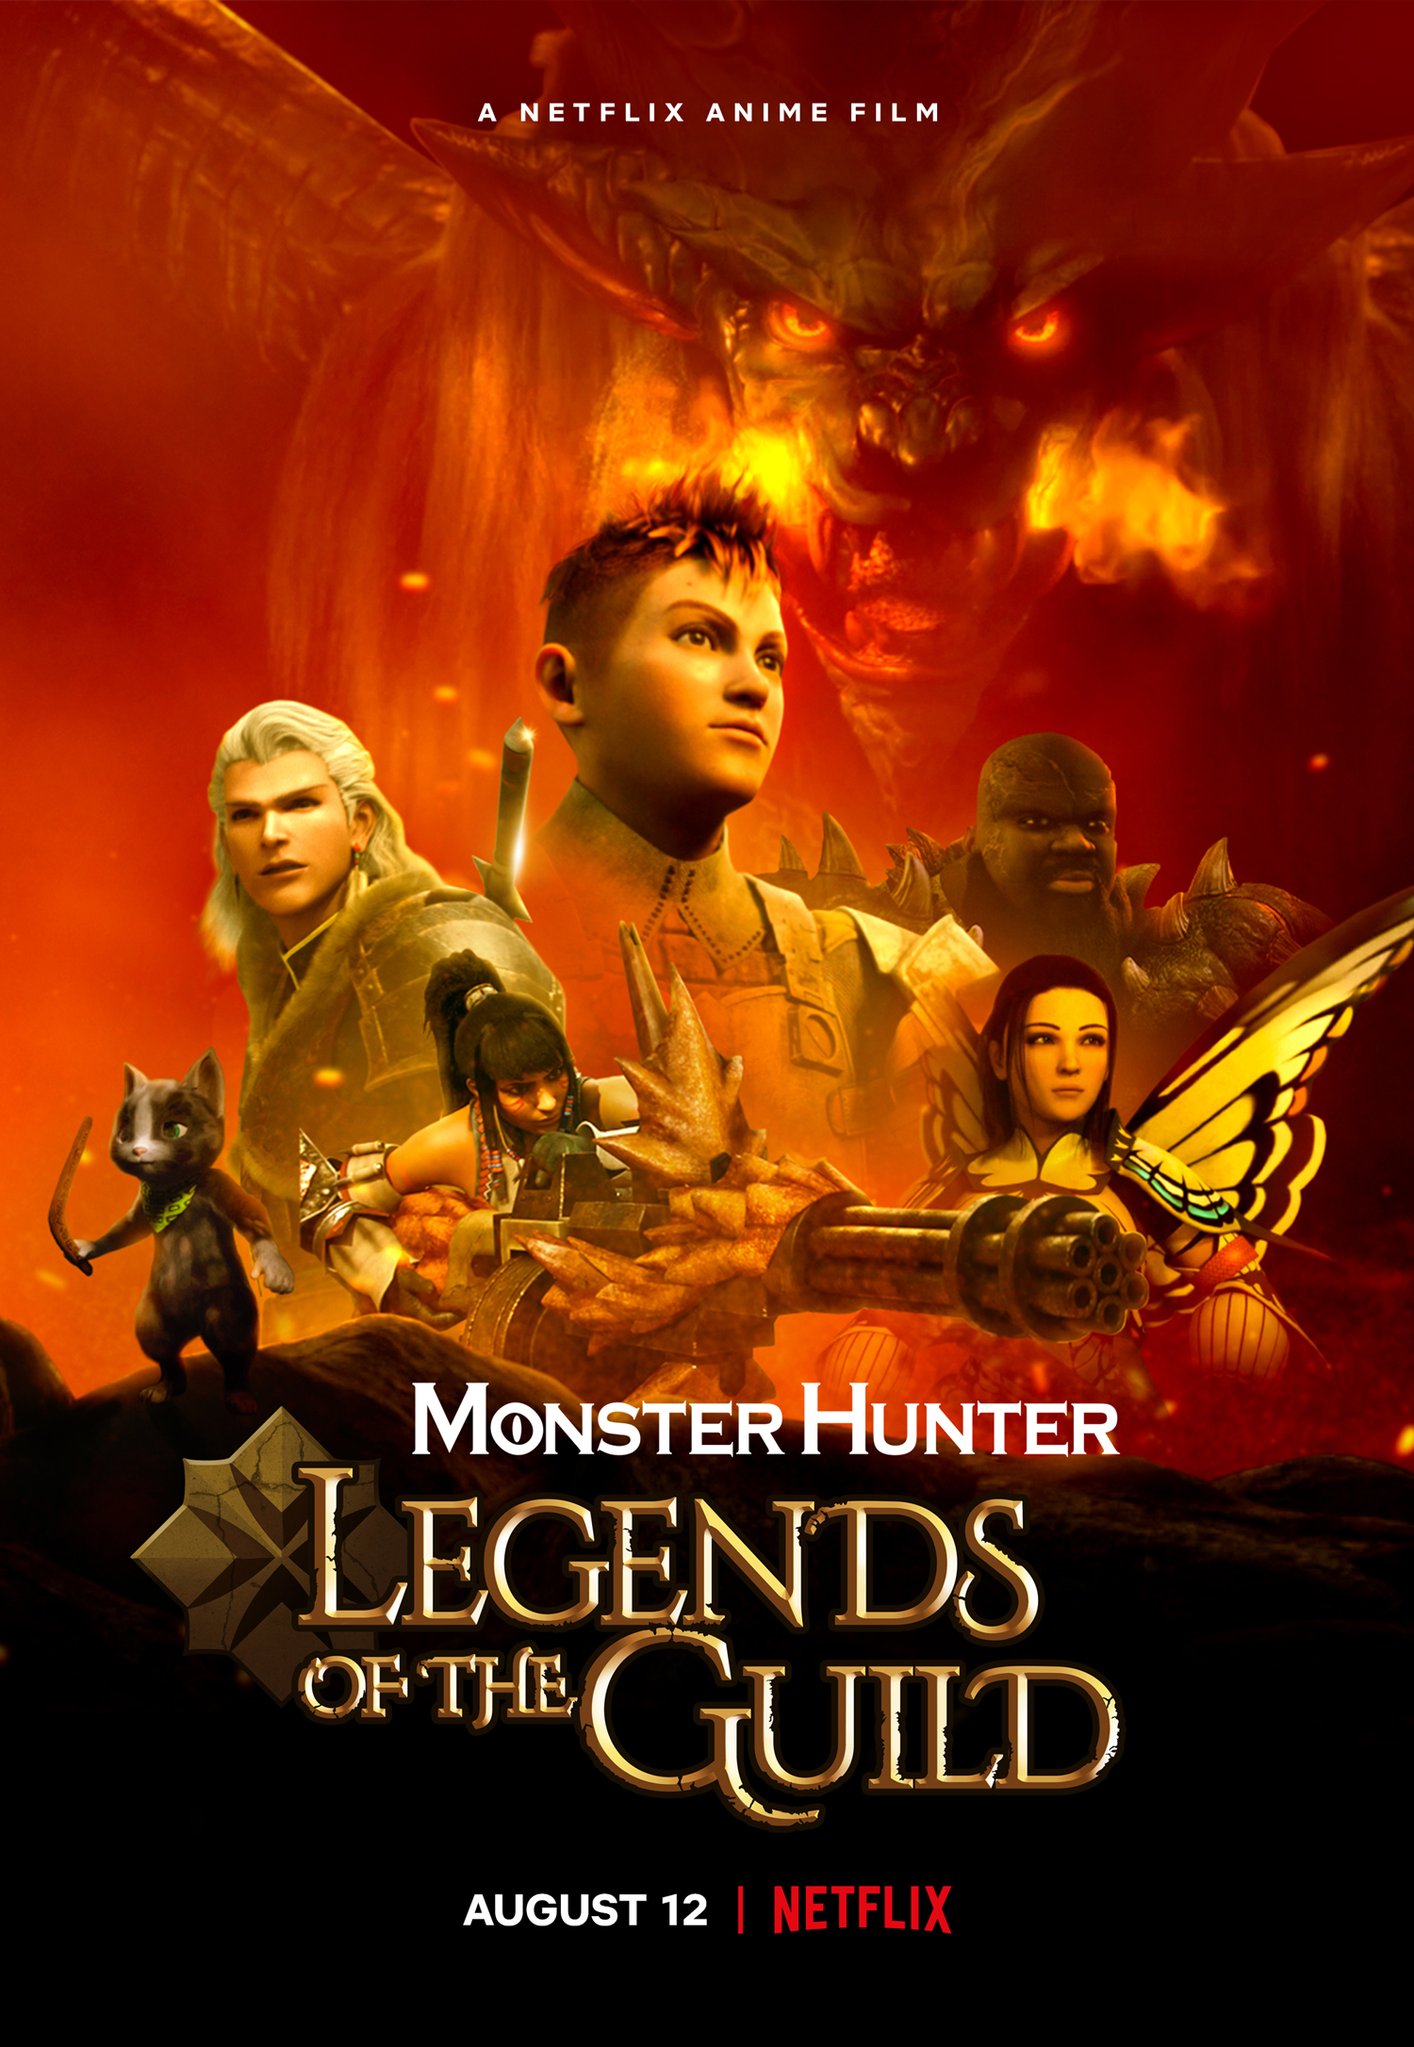 Filme 'Monster hunter', inspirado em jogo, ganha painel na CCXP 2020